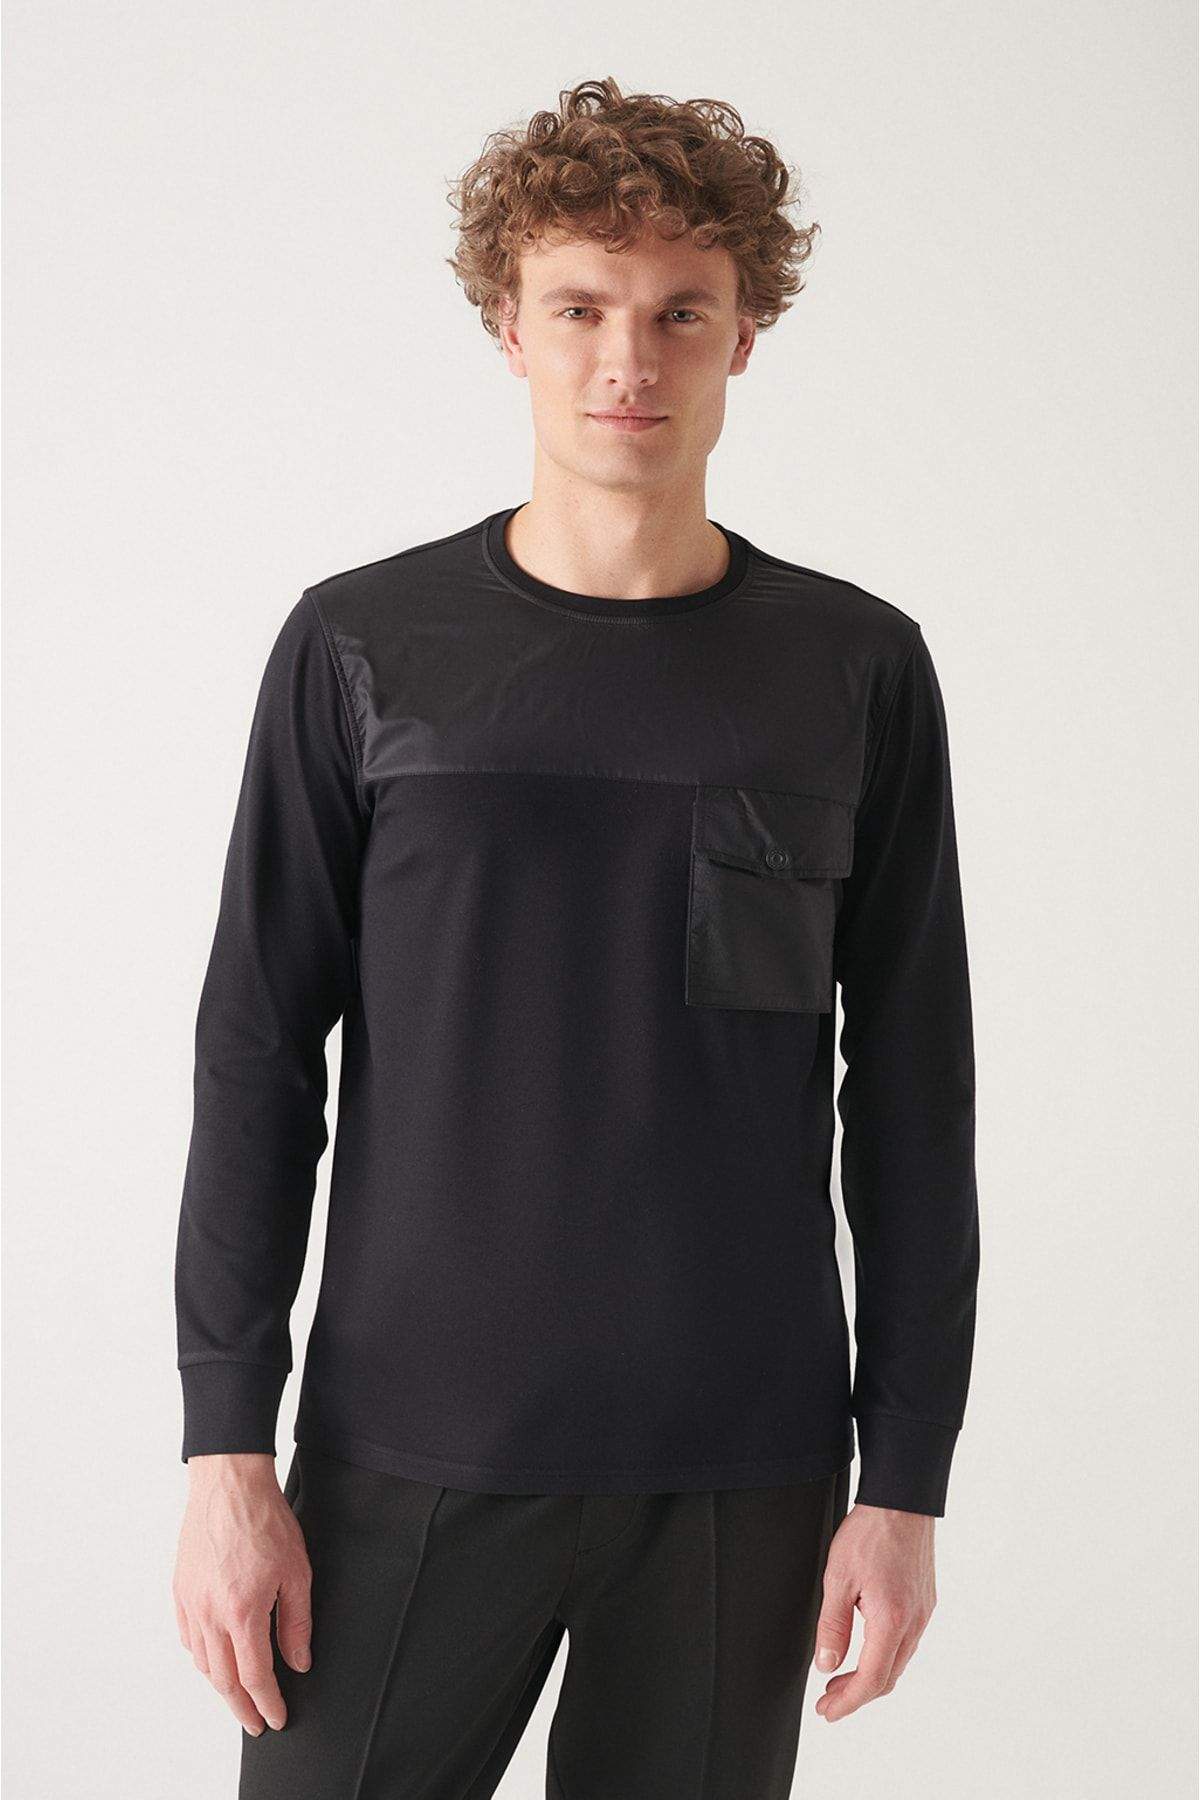 mens-black-crew-neck-fleece-3-thread-sweatshirt-a22y1221